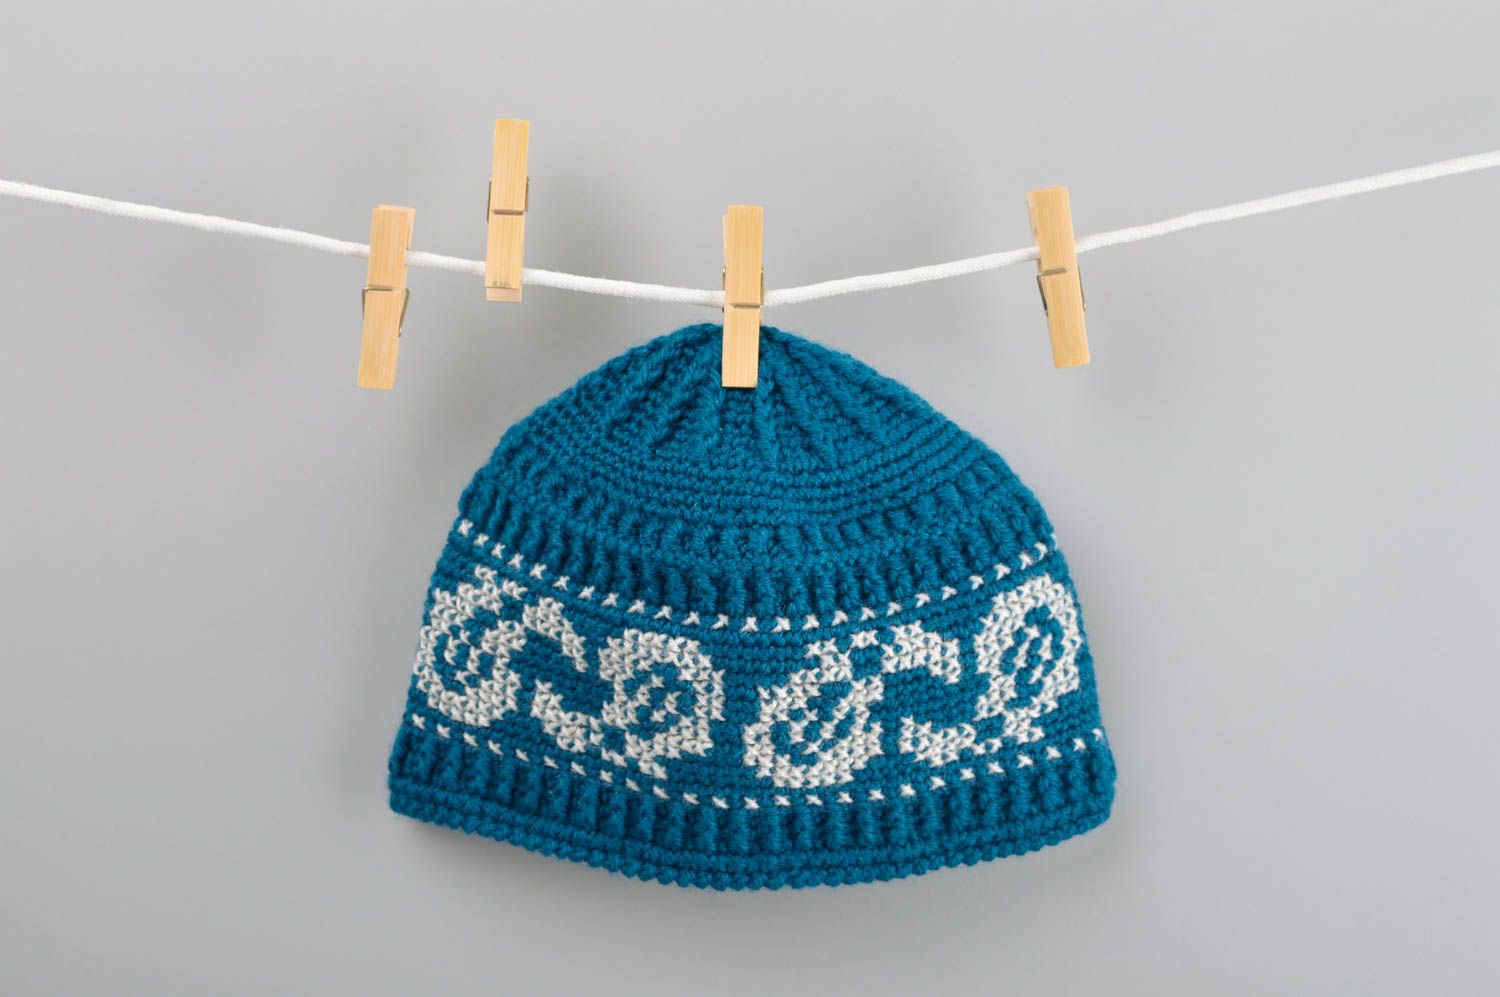 Вязаная шапка ручной работы мужская шапка красивая зимняя шапка голубая фото 2